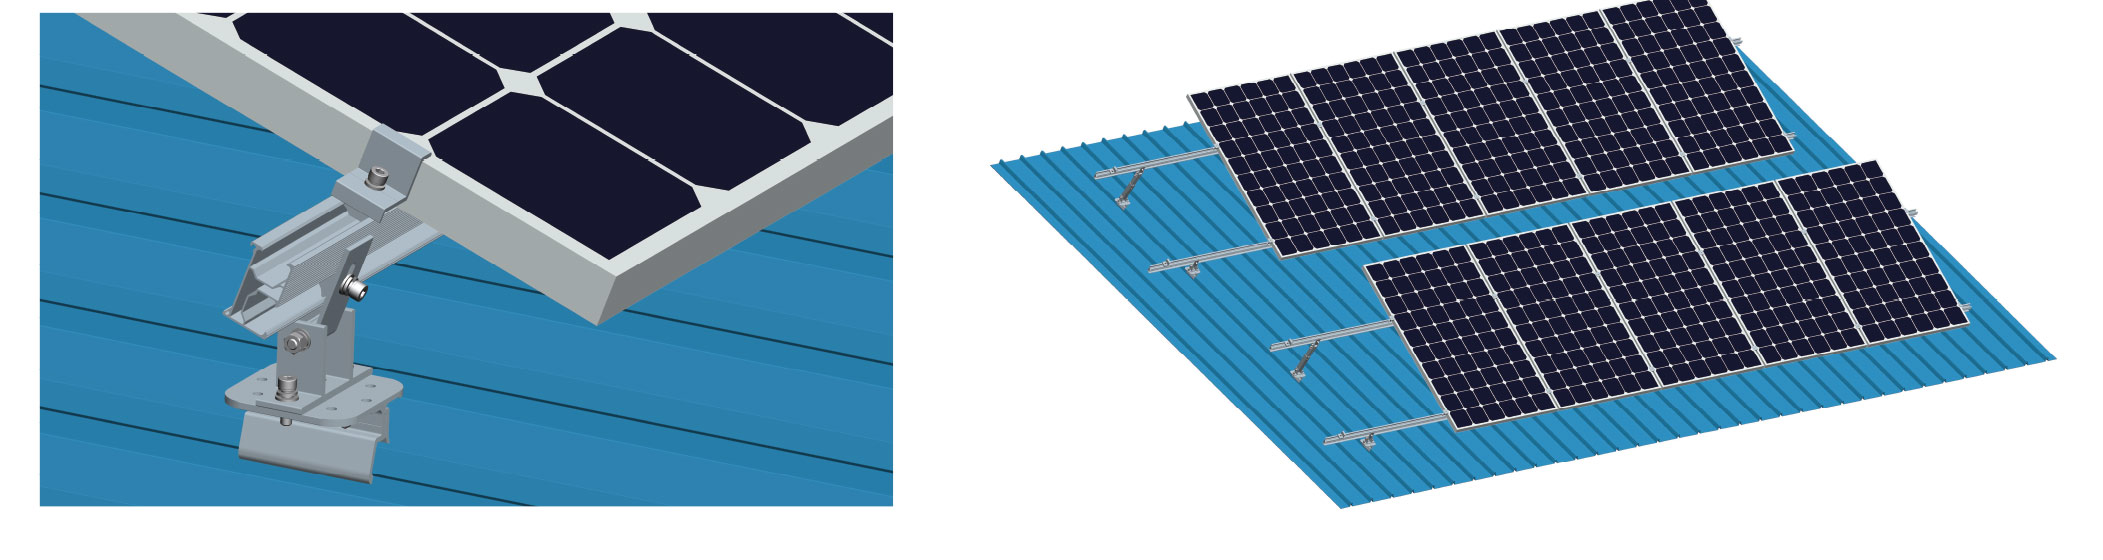 Componente de montagem solar.jpg